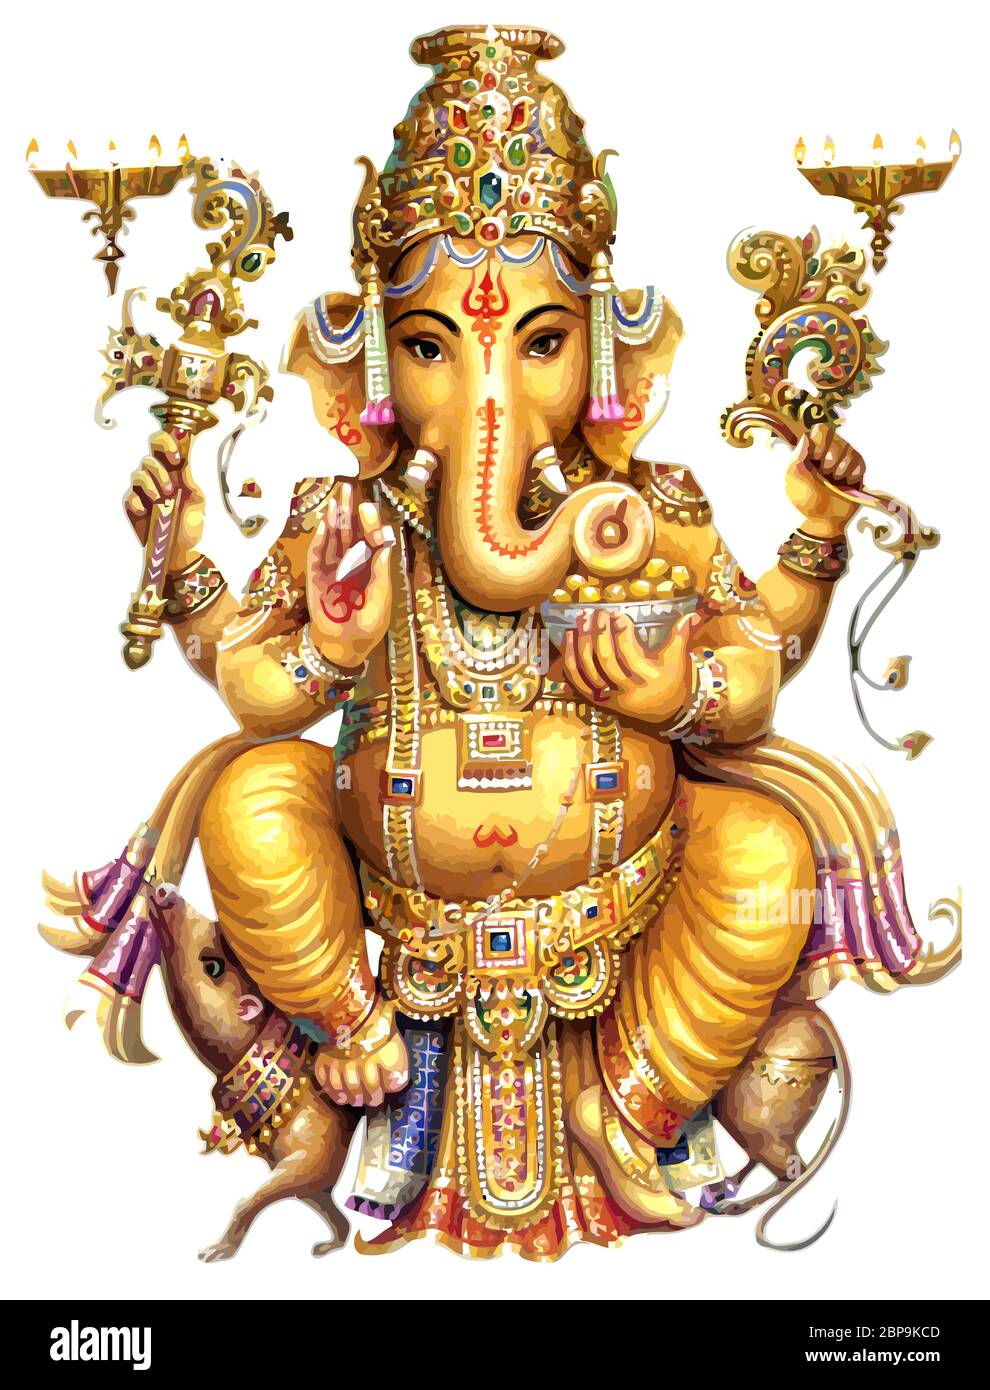 Với đôi mắt cầu mong sự may mắn và thành công, Ganesha vàng rực rỡ sẽ làm nổi bật không gian của bạn và giúp cho tâm hồn bạn luôn yên bình. Hãy xem ngay bức hình quyến rũ về Ganesha vàng để cảm nhận sức mạnh của nó.